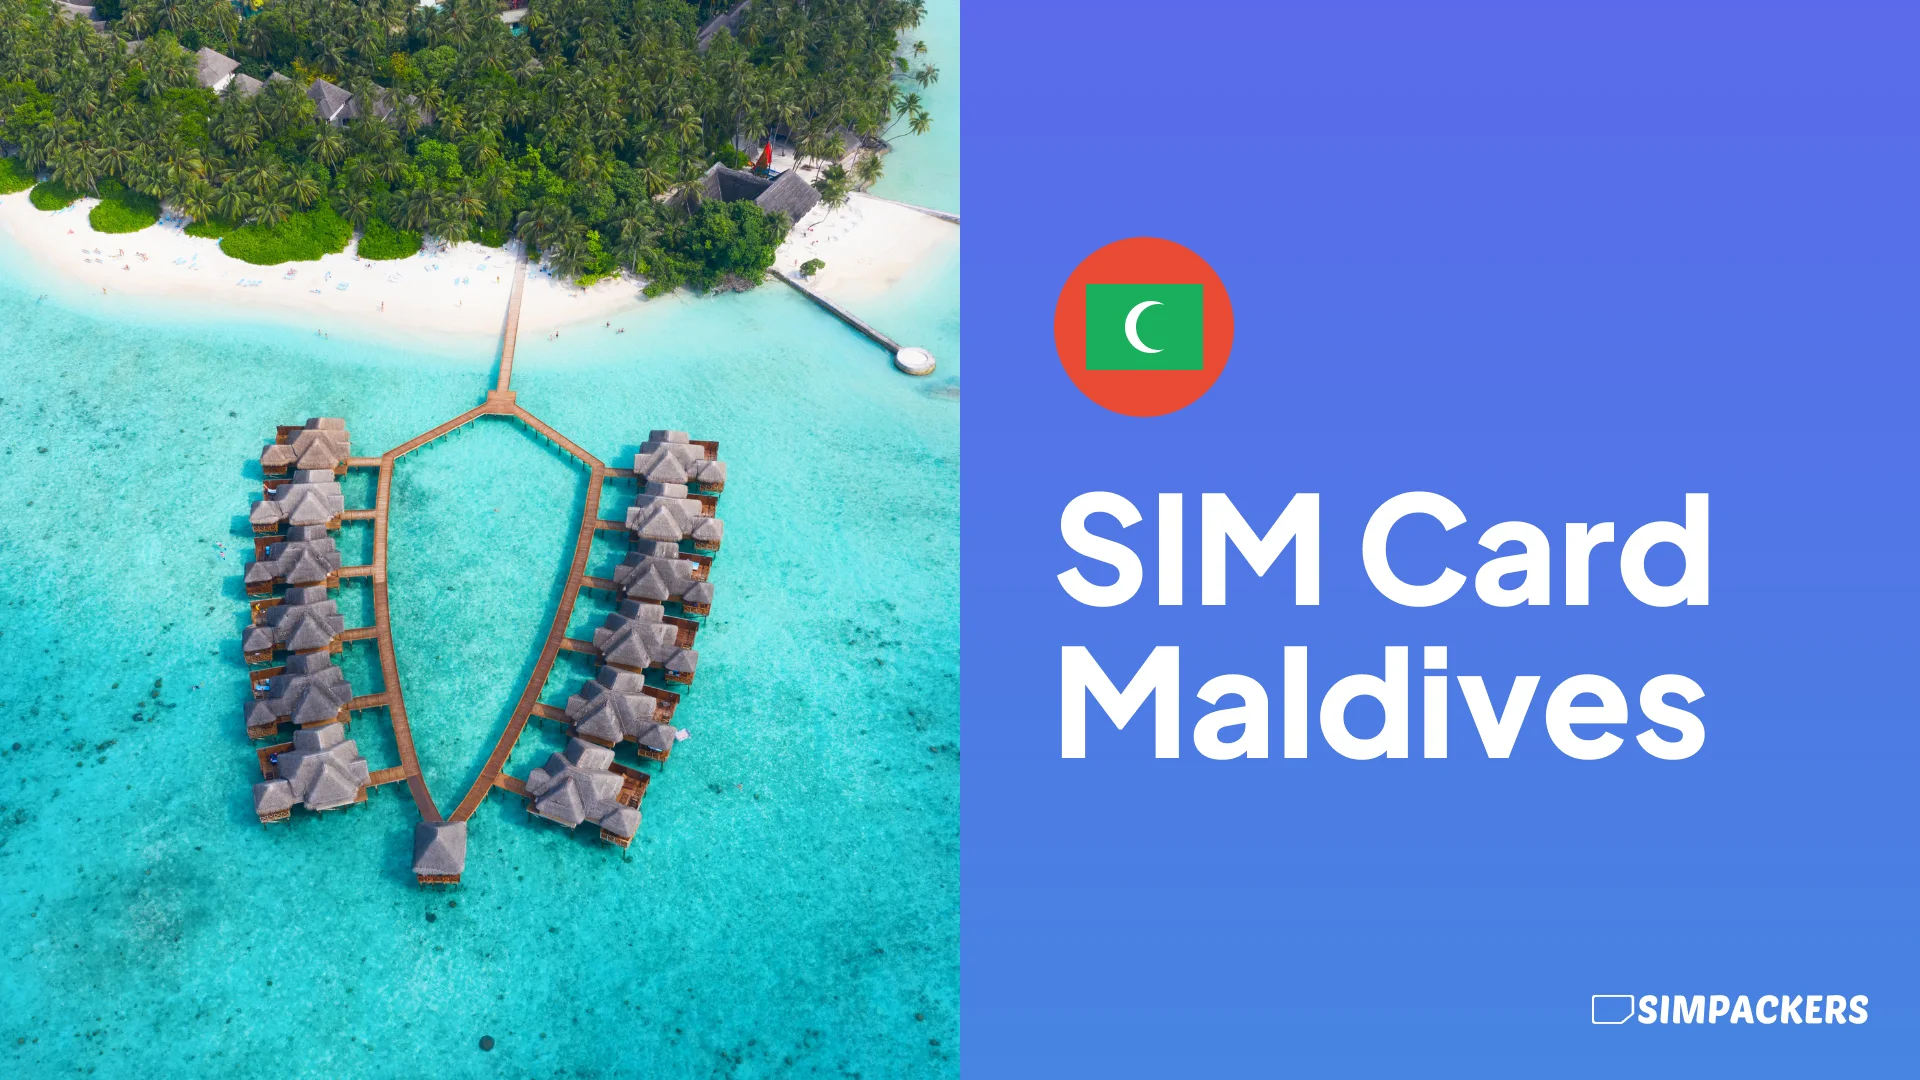 EN/FEATURED_IMAGES/sim-card-maldives.webp